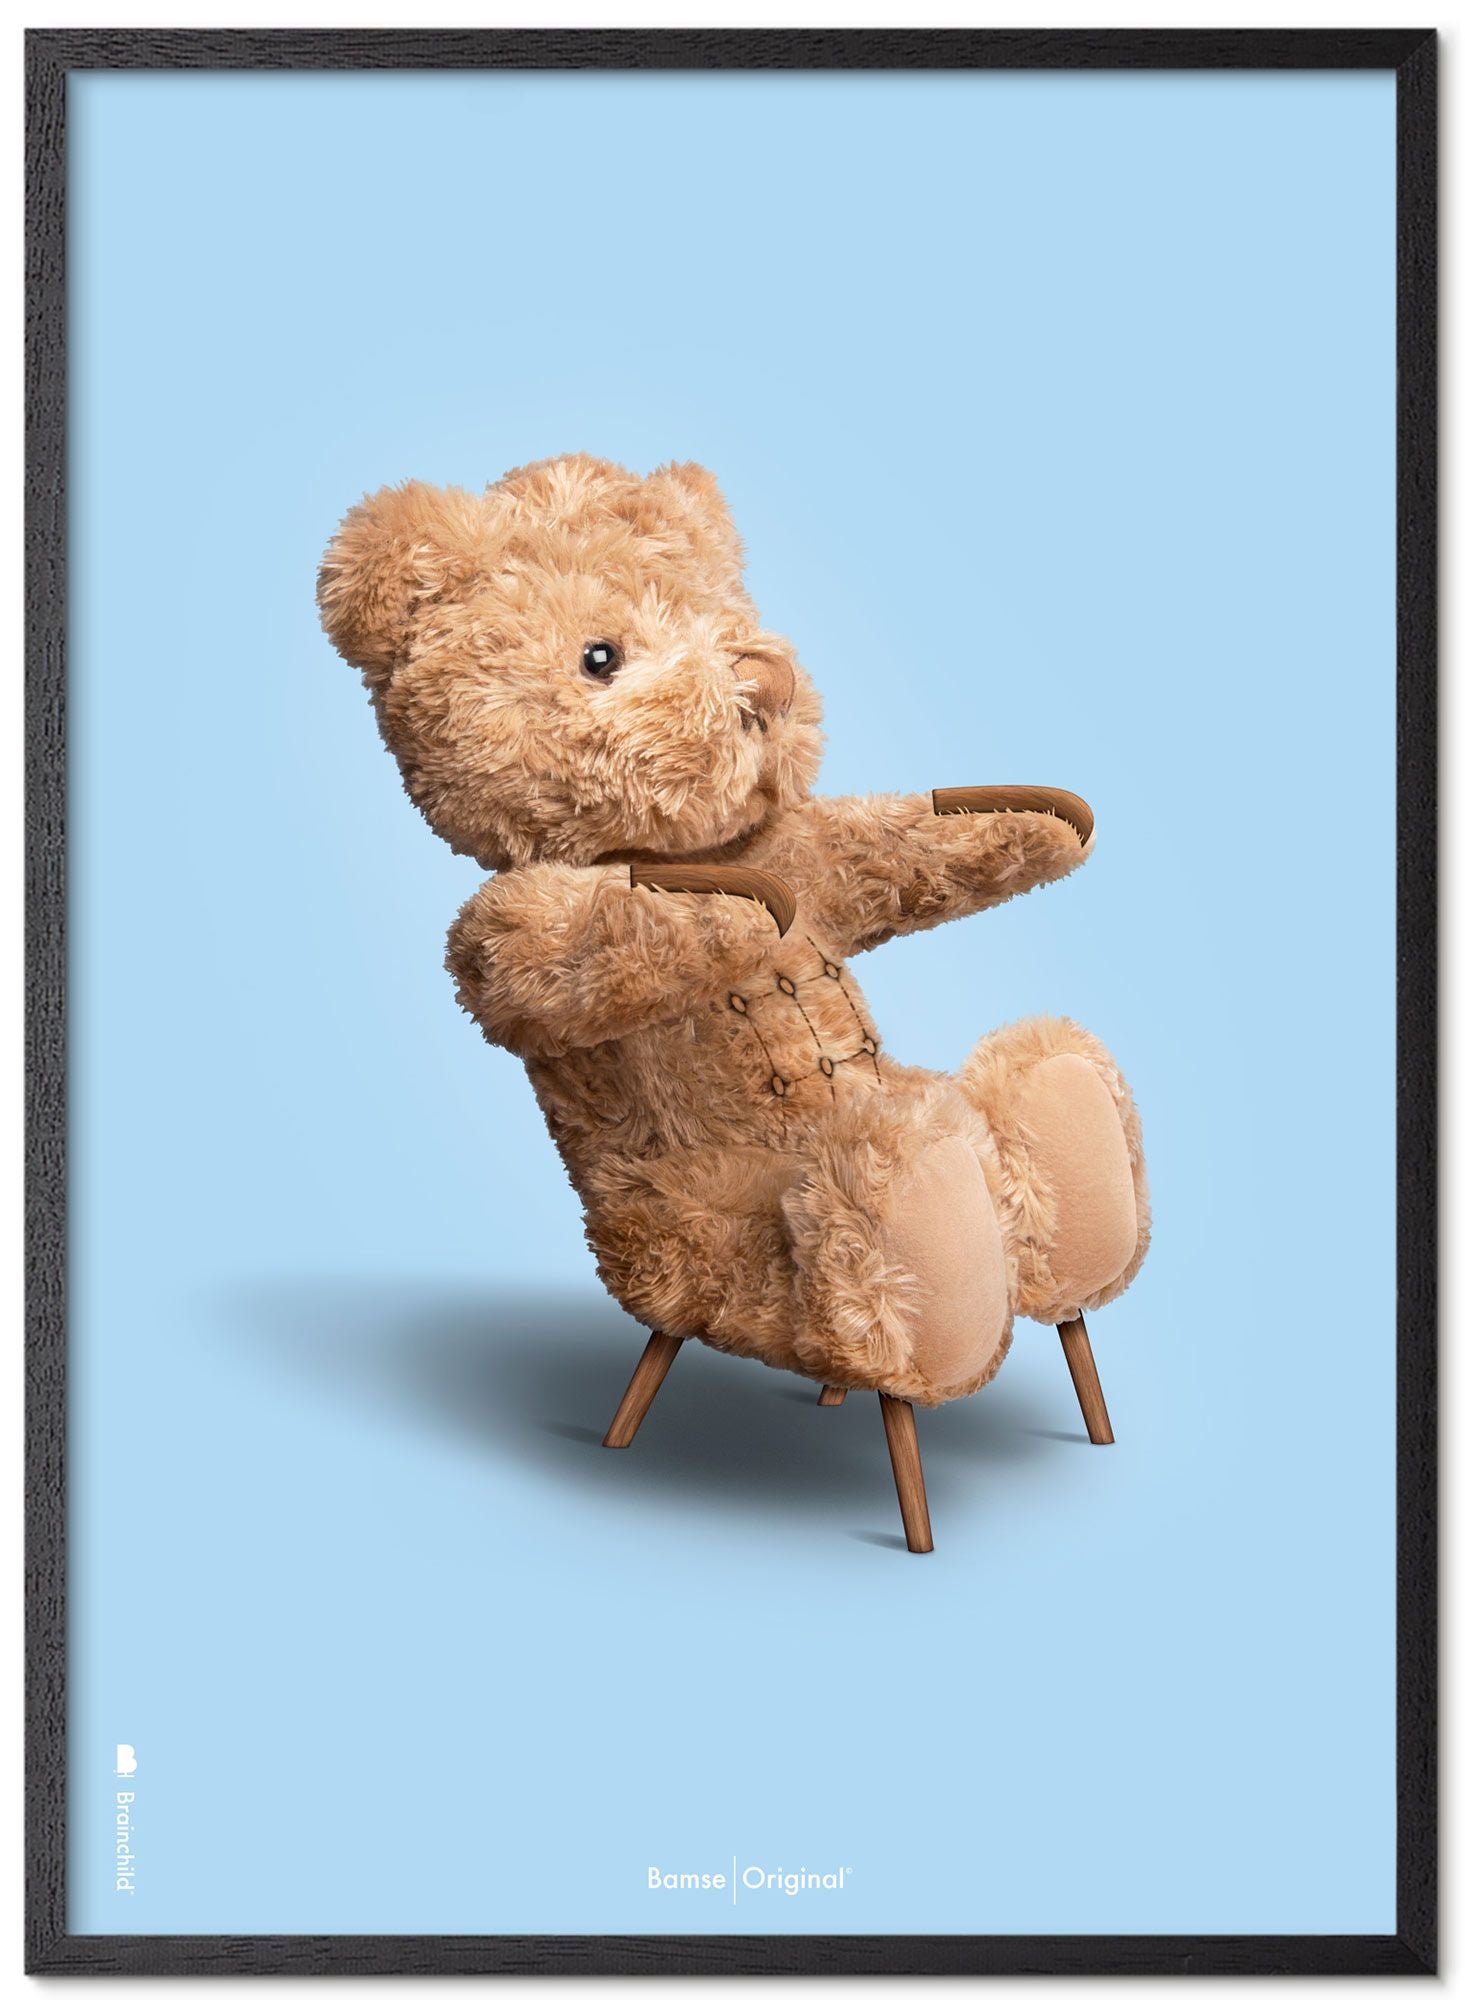 Brainchild Teddy Bear Classic plakát z plakátu vyrobený z černého lakovaného dřeva 30x40 cm, světle modré pozadí